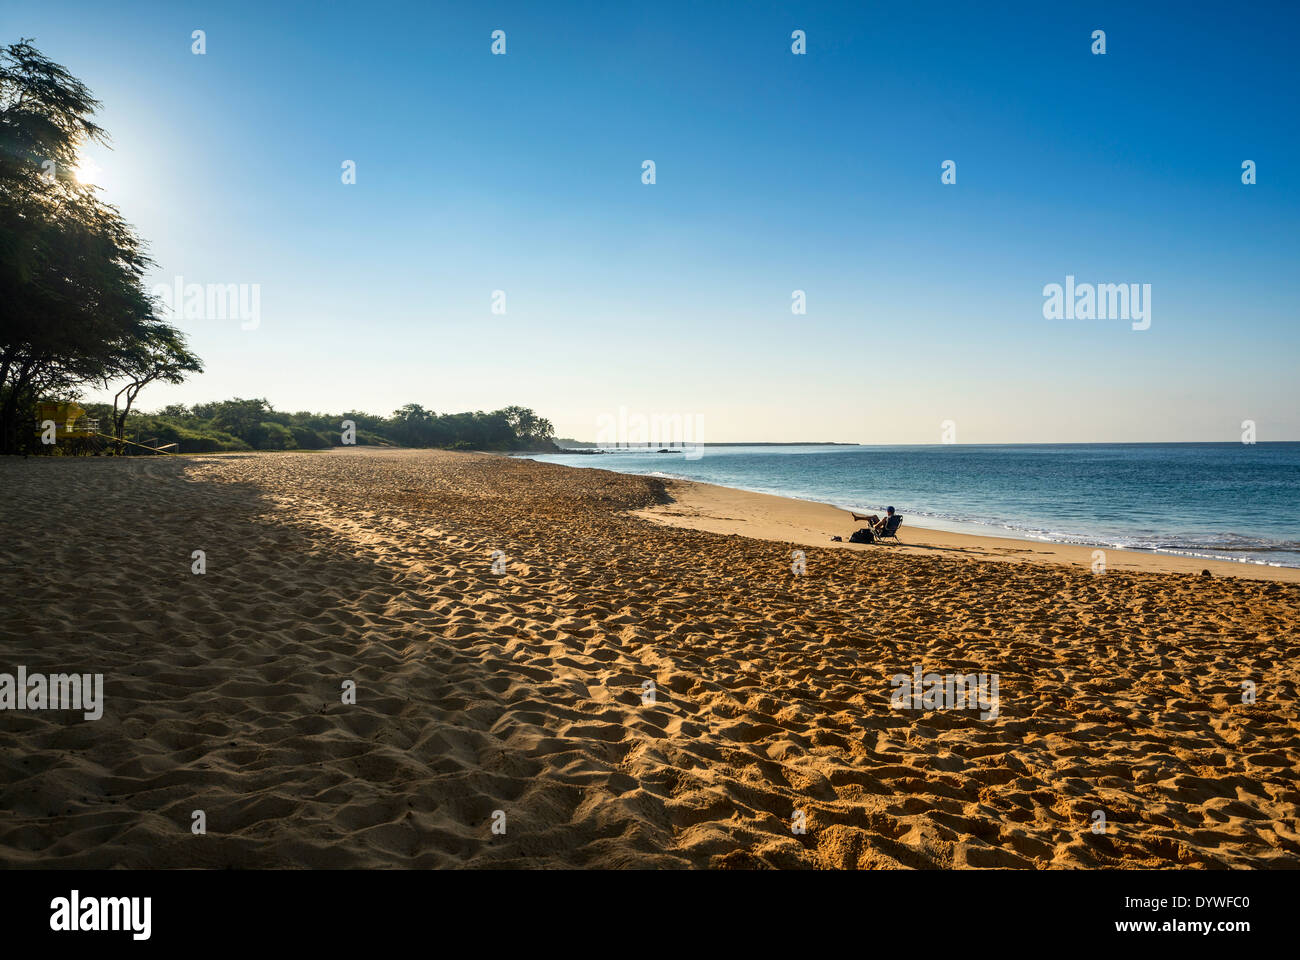 La famosa e incontaminata spiaggia grande di Maui. Foto Stock